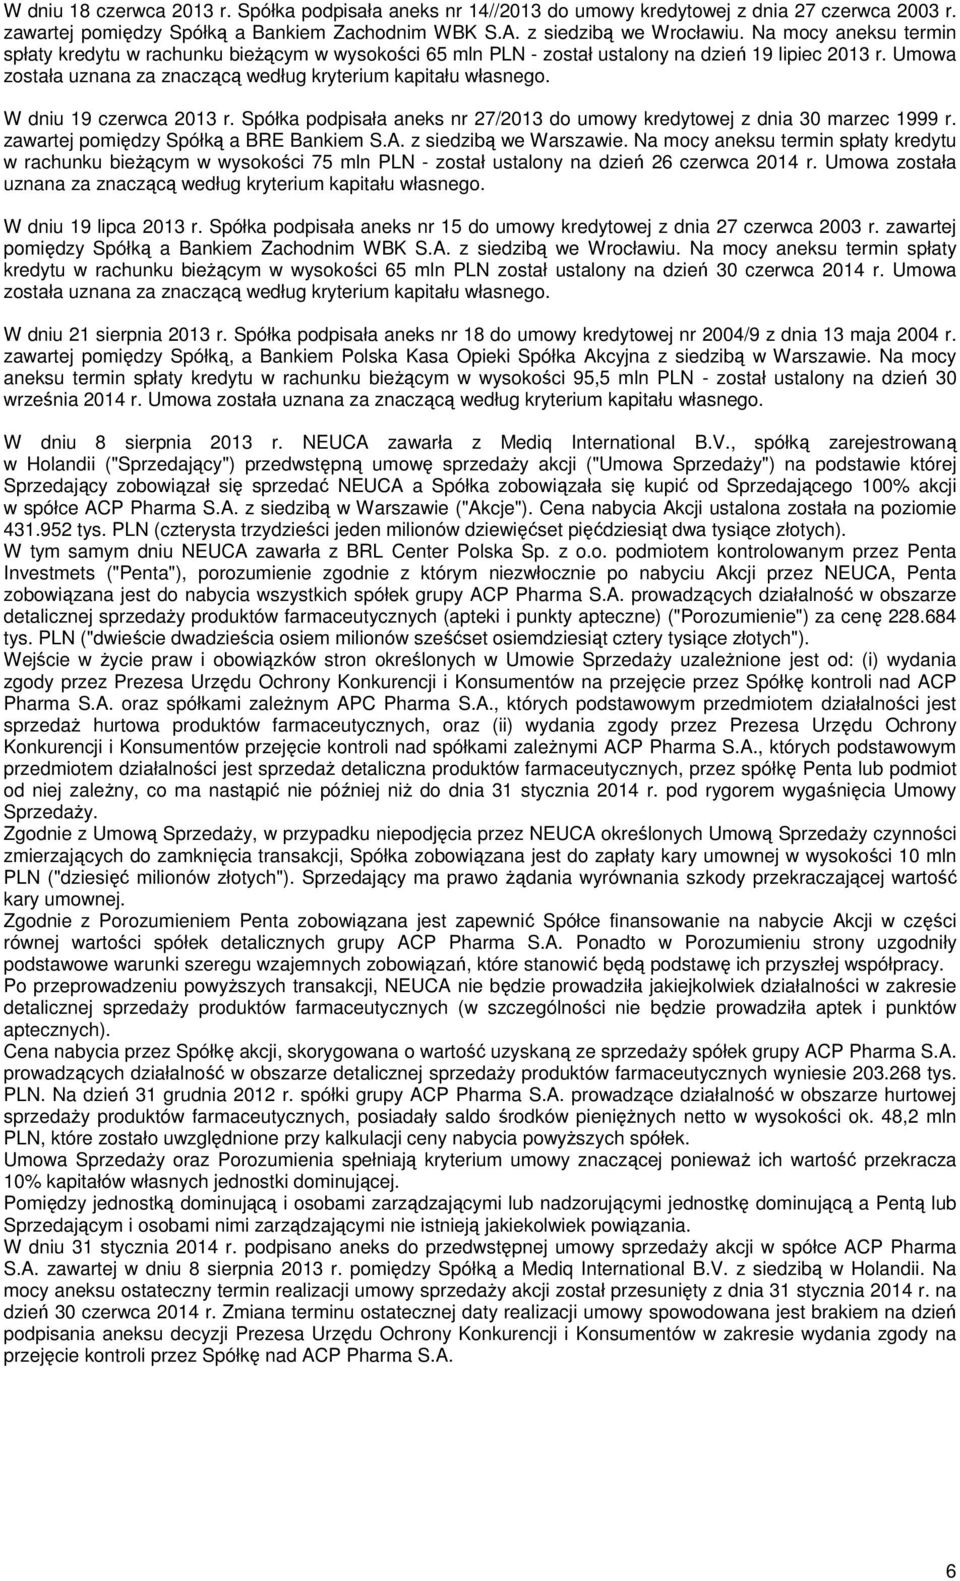 W dniu 19 czerwca 2013 r. Spółka podpisała aneks nr 27/2013 do umowy kredytowej z dnia 30 marzec 1999 r. zawartej pomiędzy Spółką a BRE Bankiem S.A. z siedzibą we Warszawie.